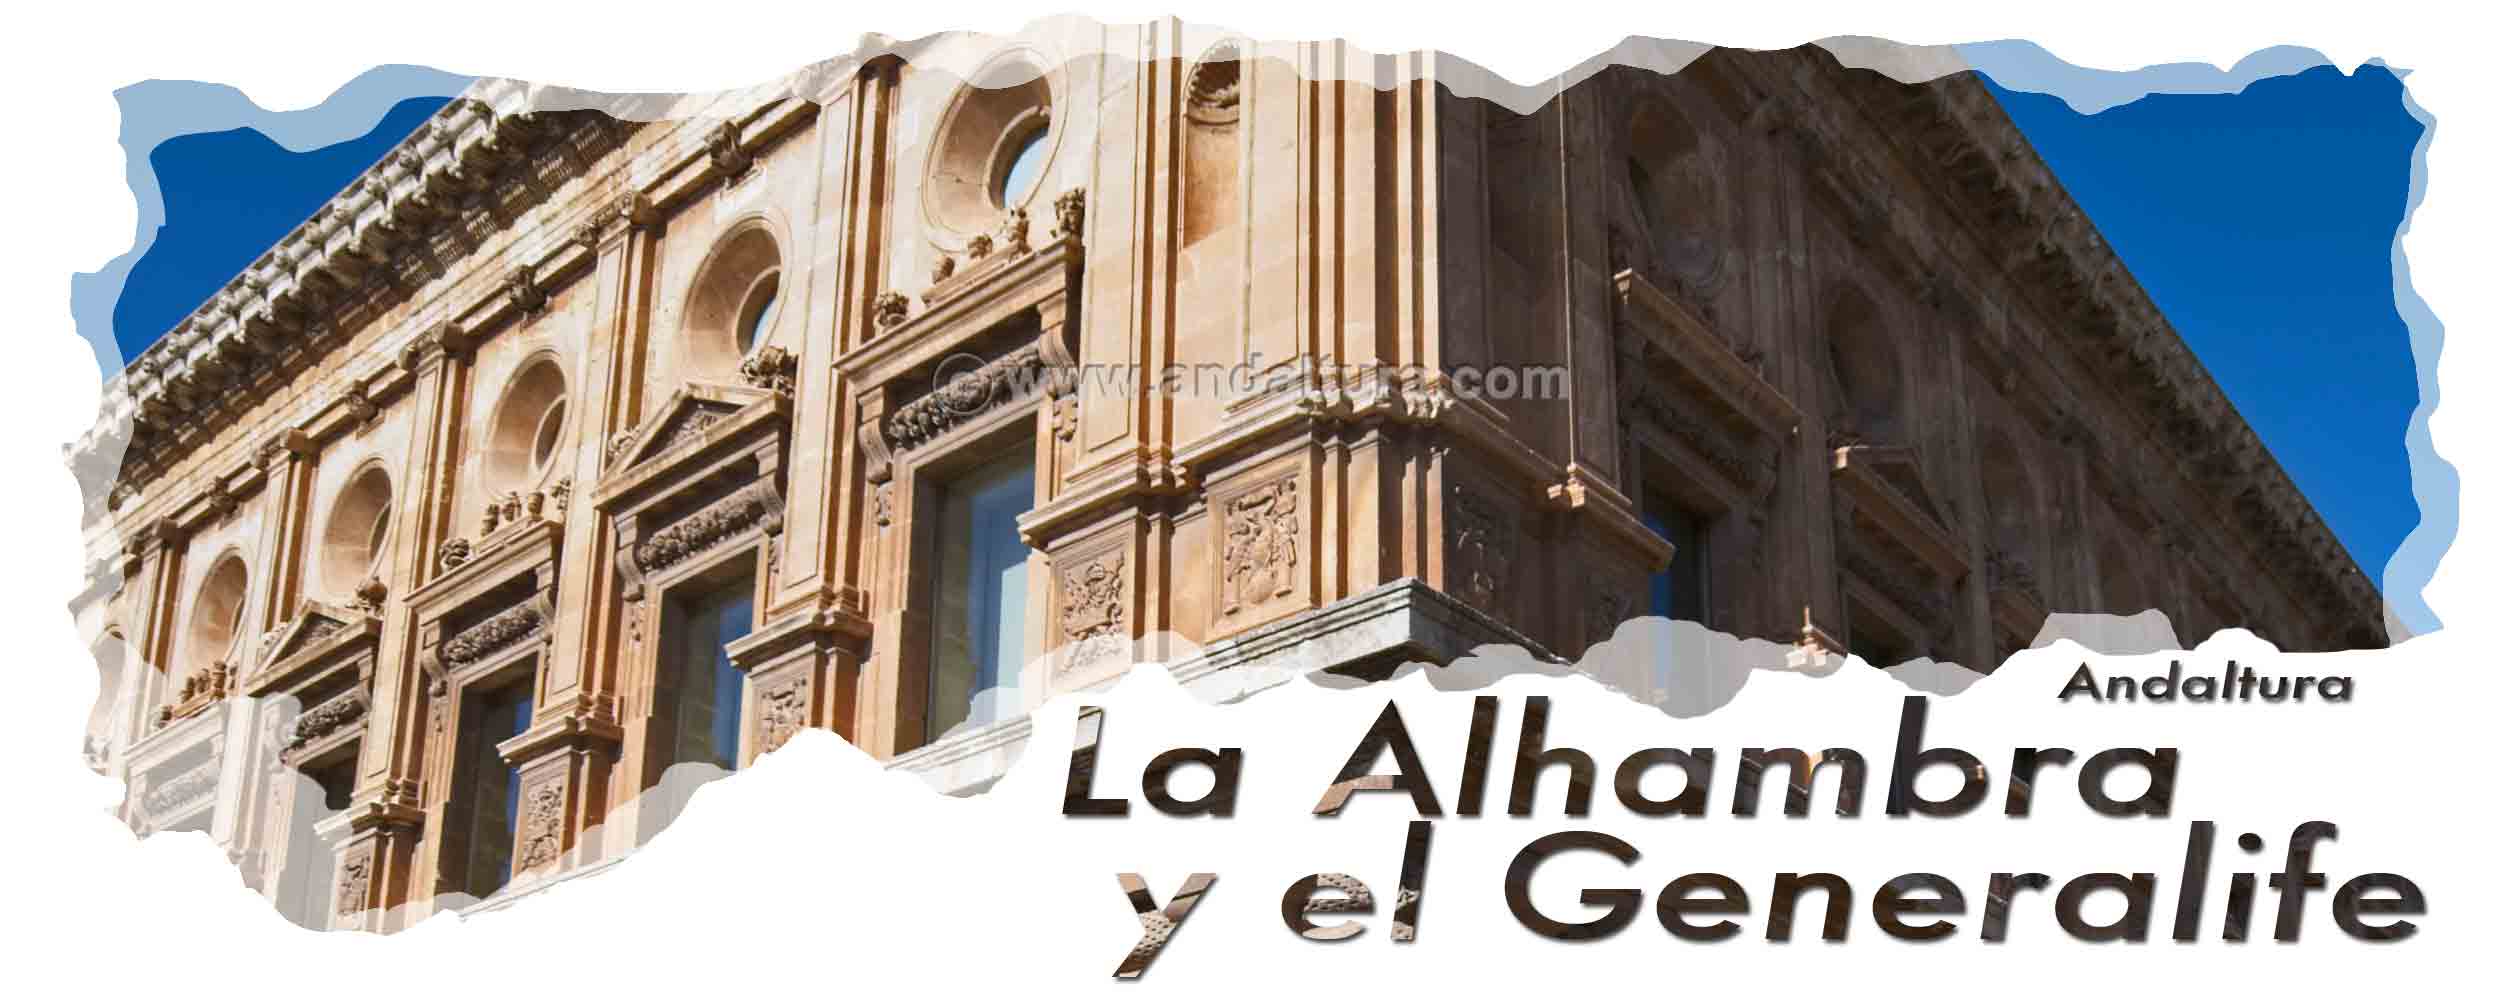 Cabecera Yeserías de la Torre de Ismail en el Palacio del Generalife - Detalle fachada del Palacio de Carlos V de la Alhambra